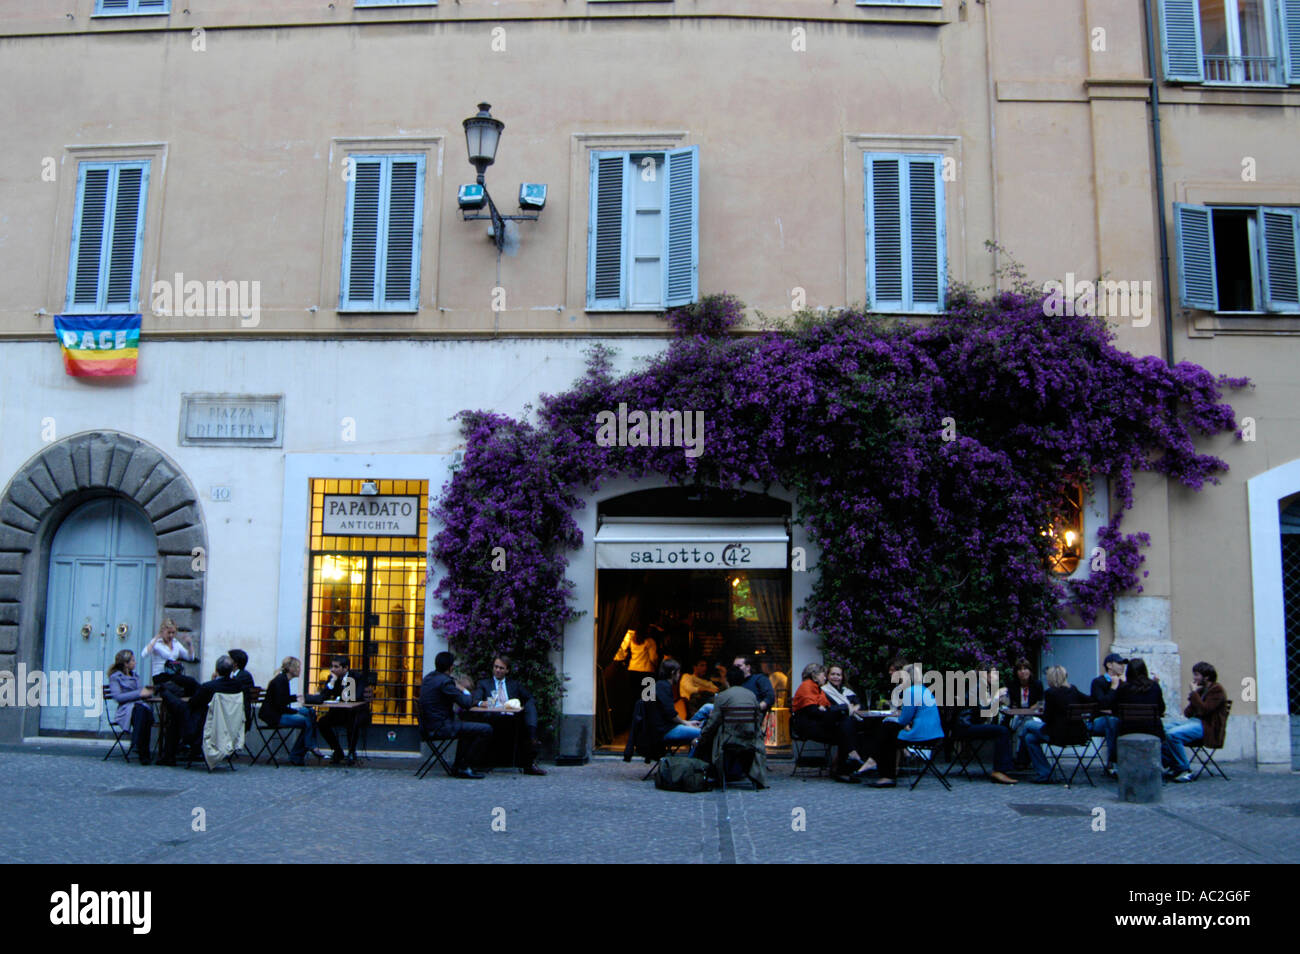 Salotto 42 bar e ristorante nel centro della città, Roma Italia Foto Stock